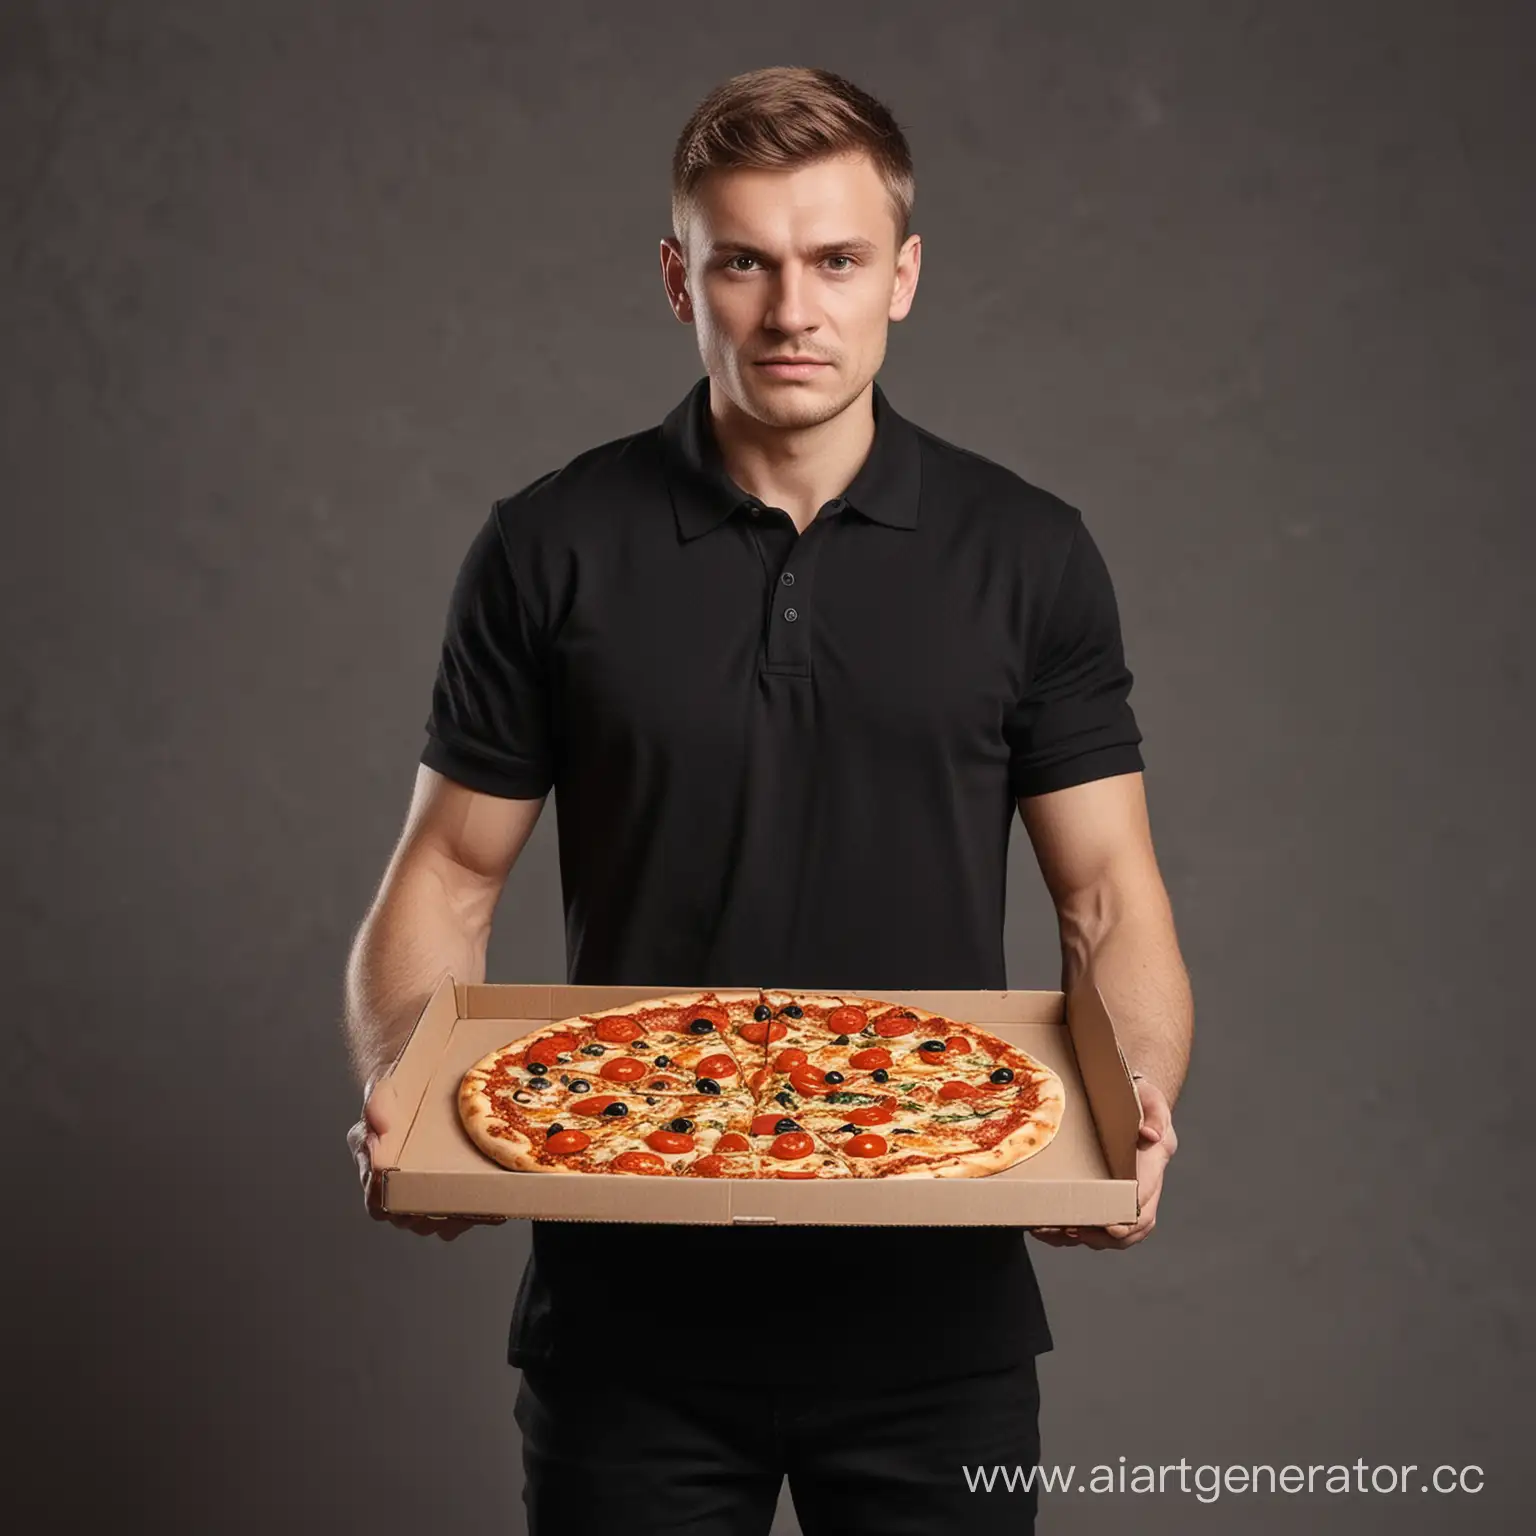 повар мужчина русский в черной футболке поло держит пиццу
